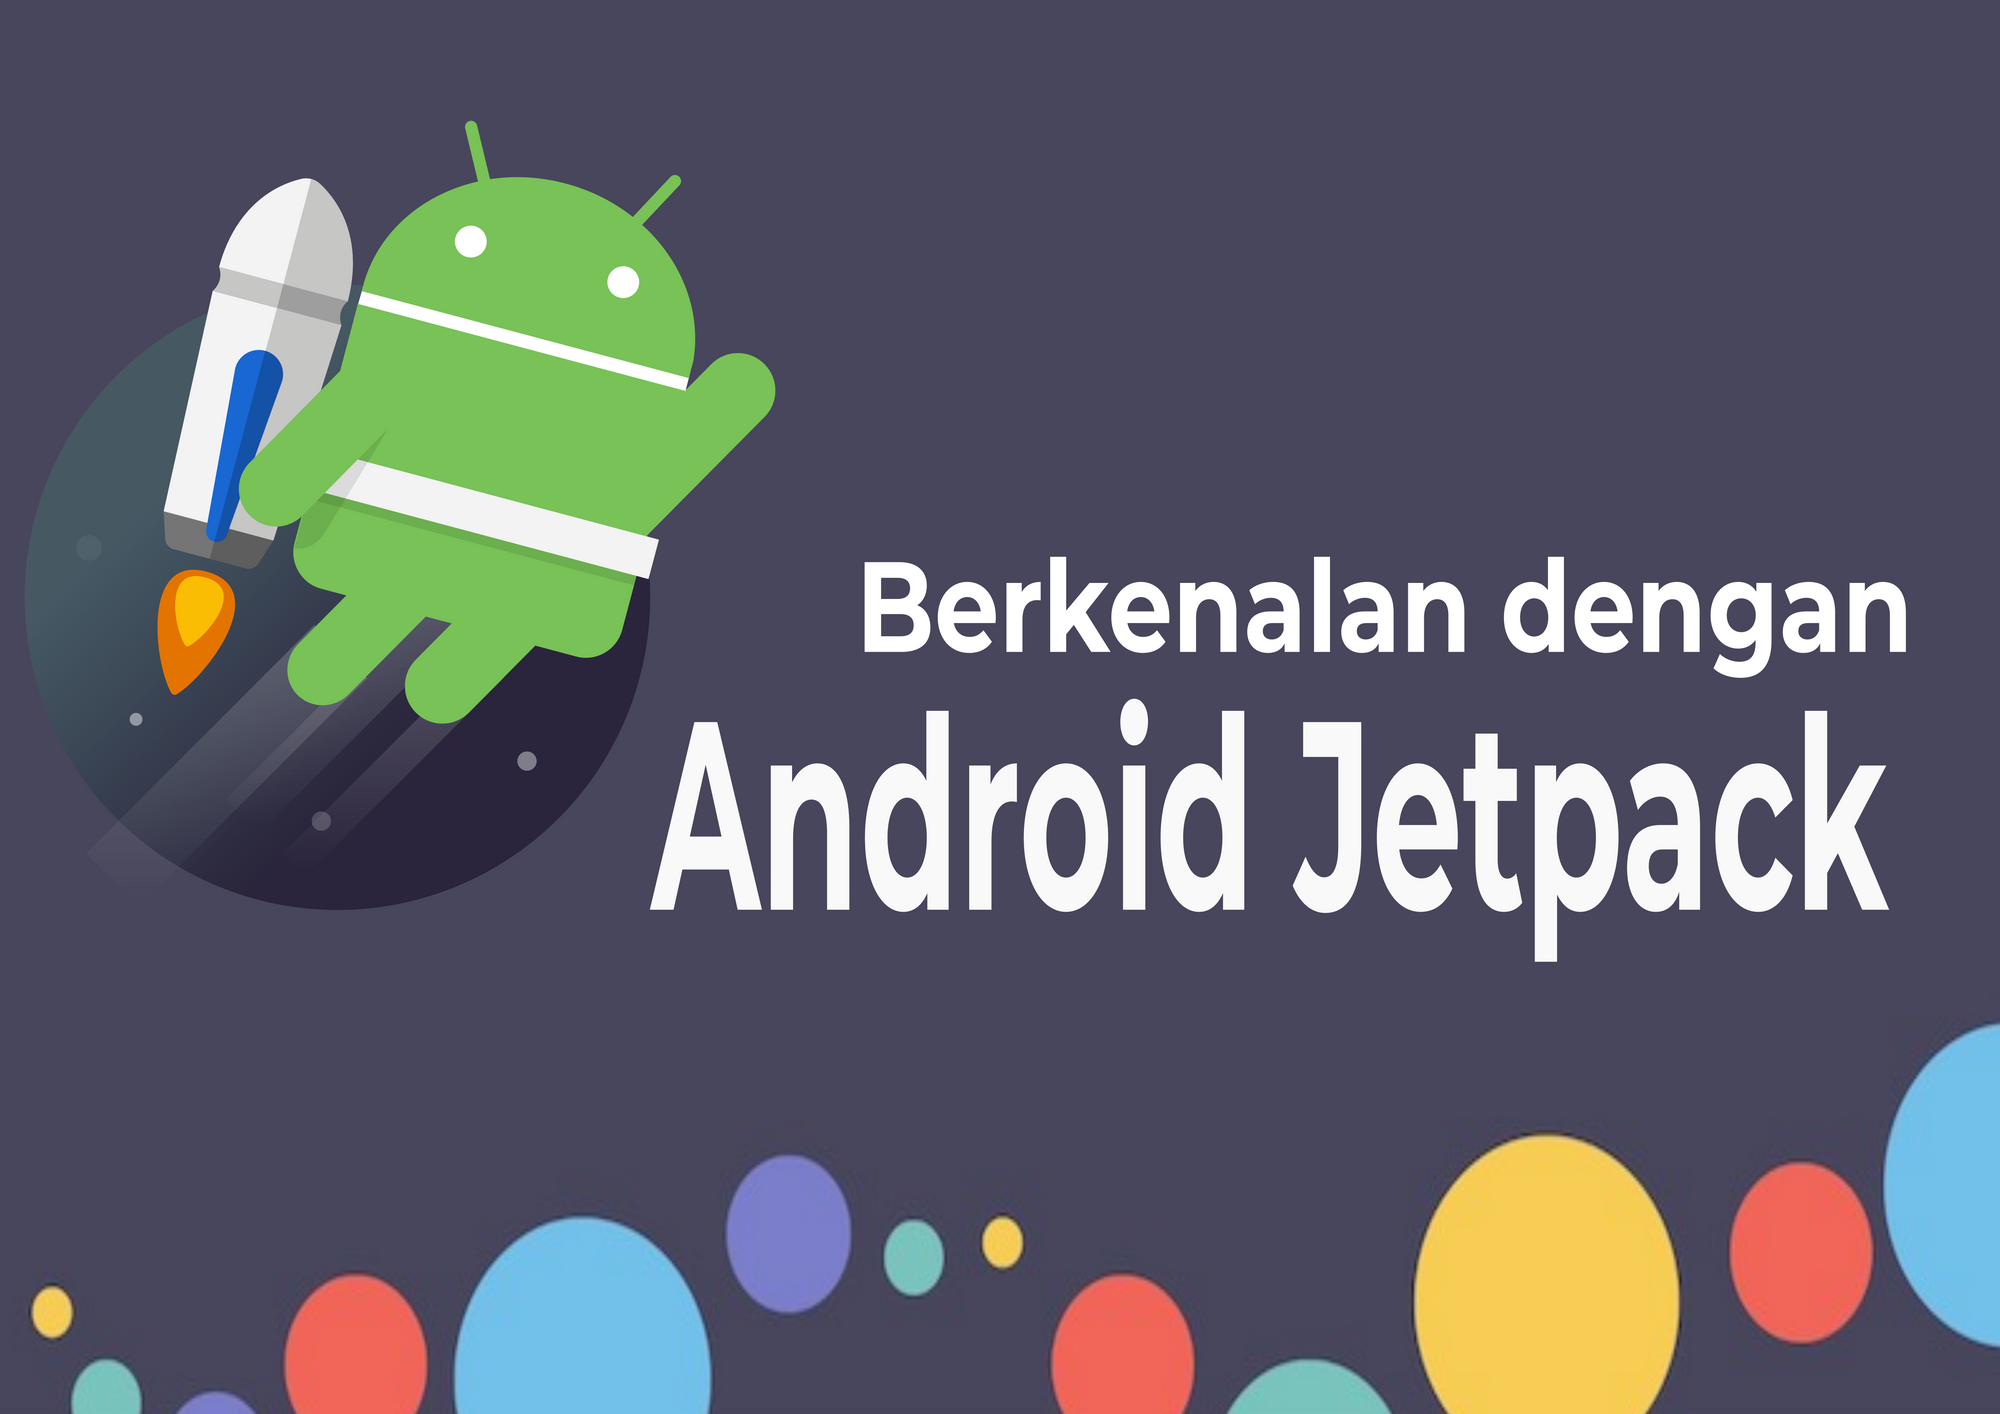 Berkenalan dengan Android Jetpack